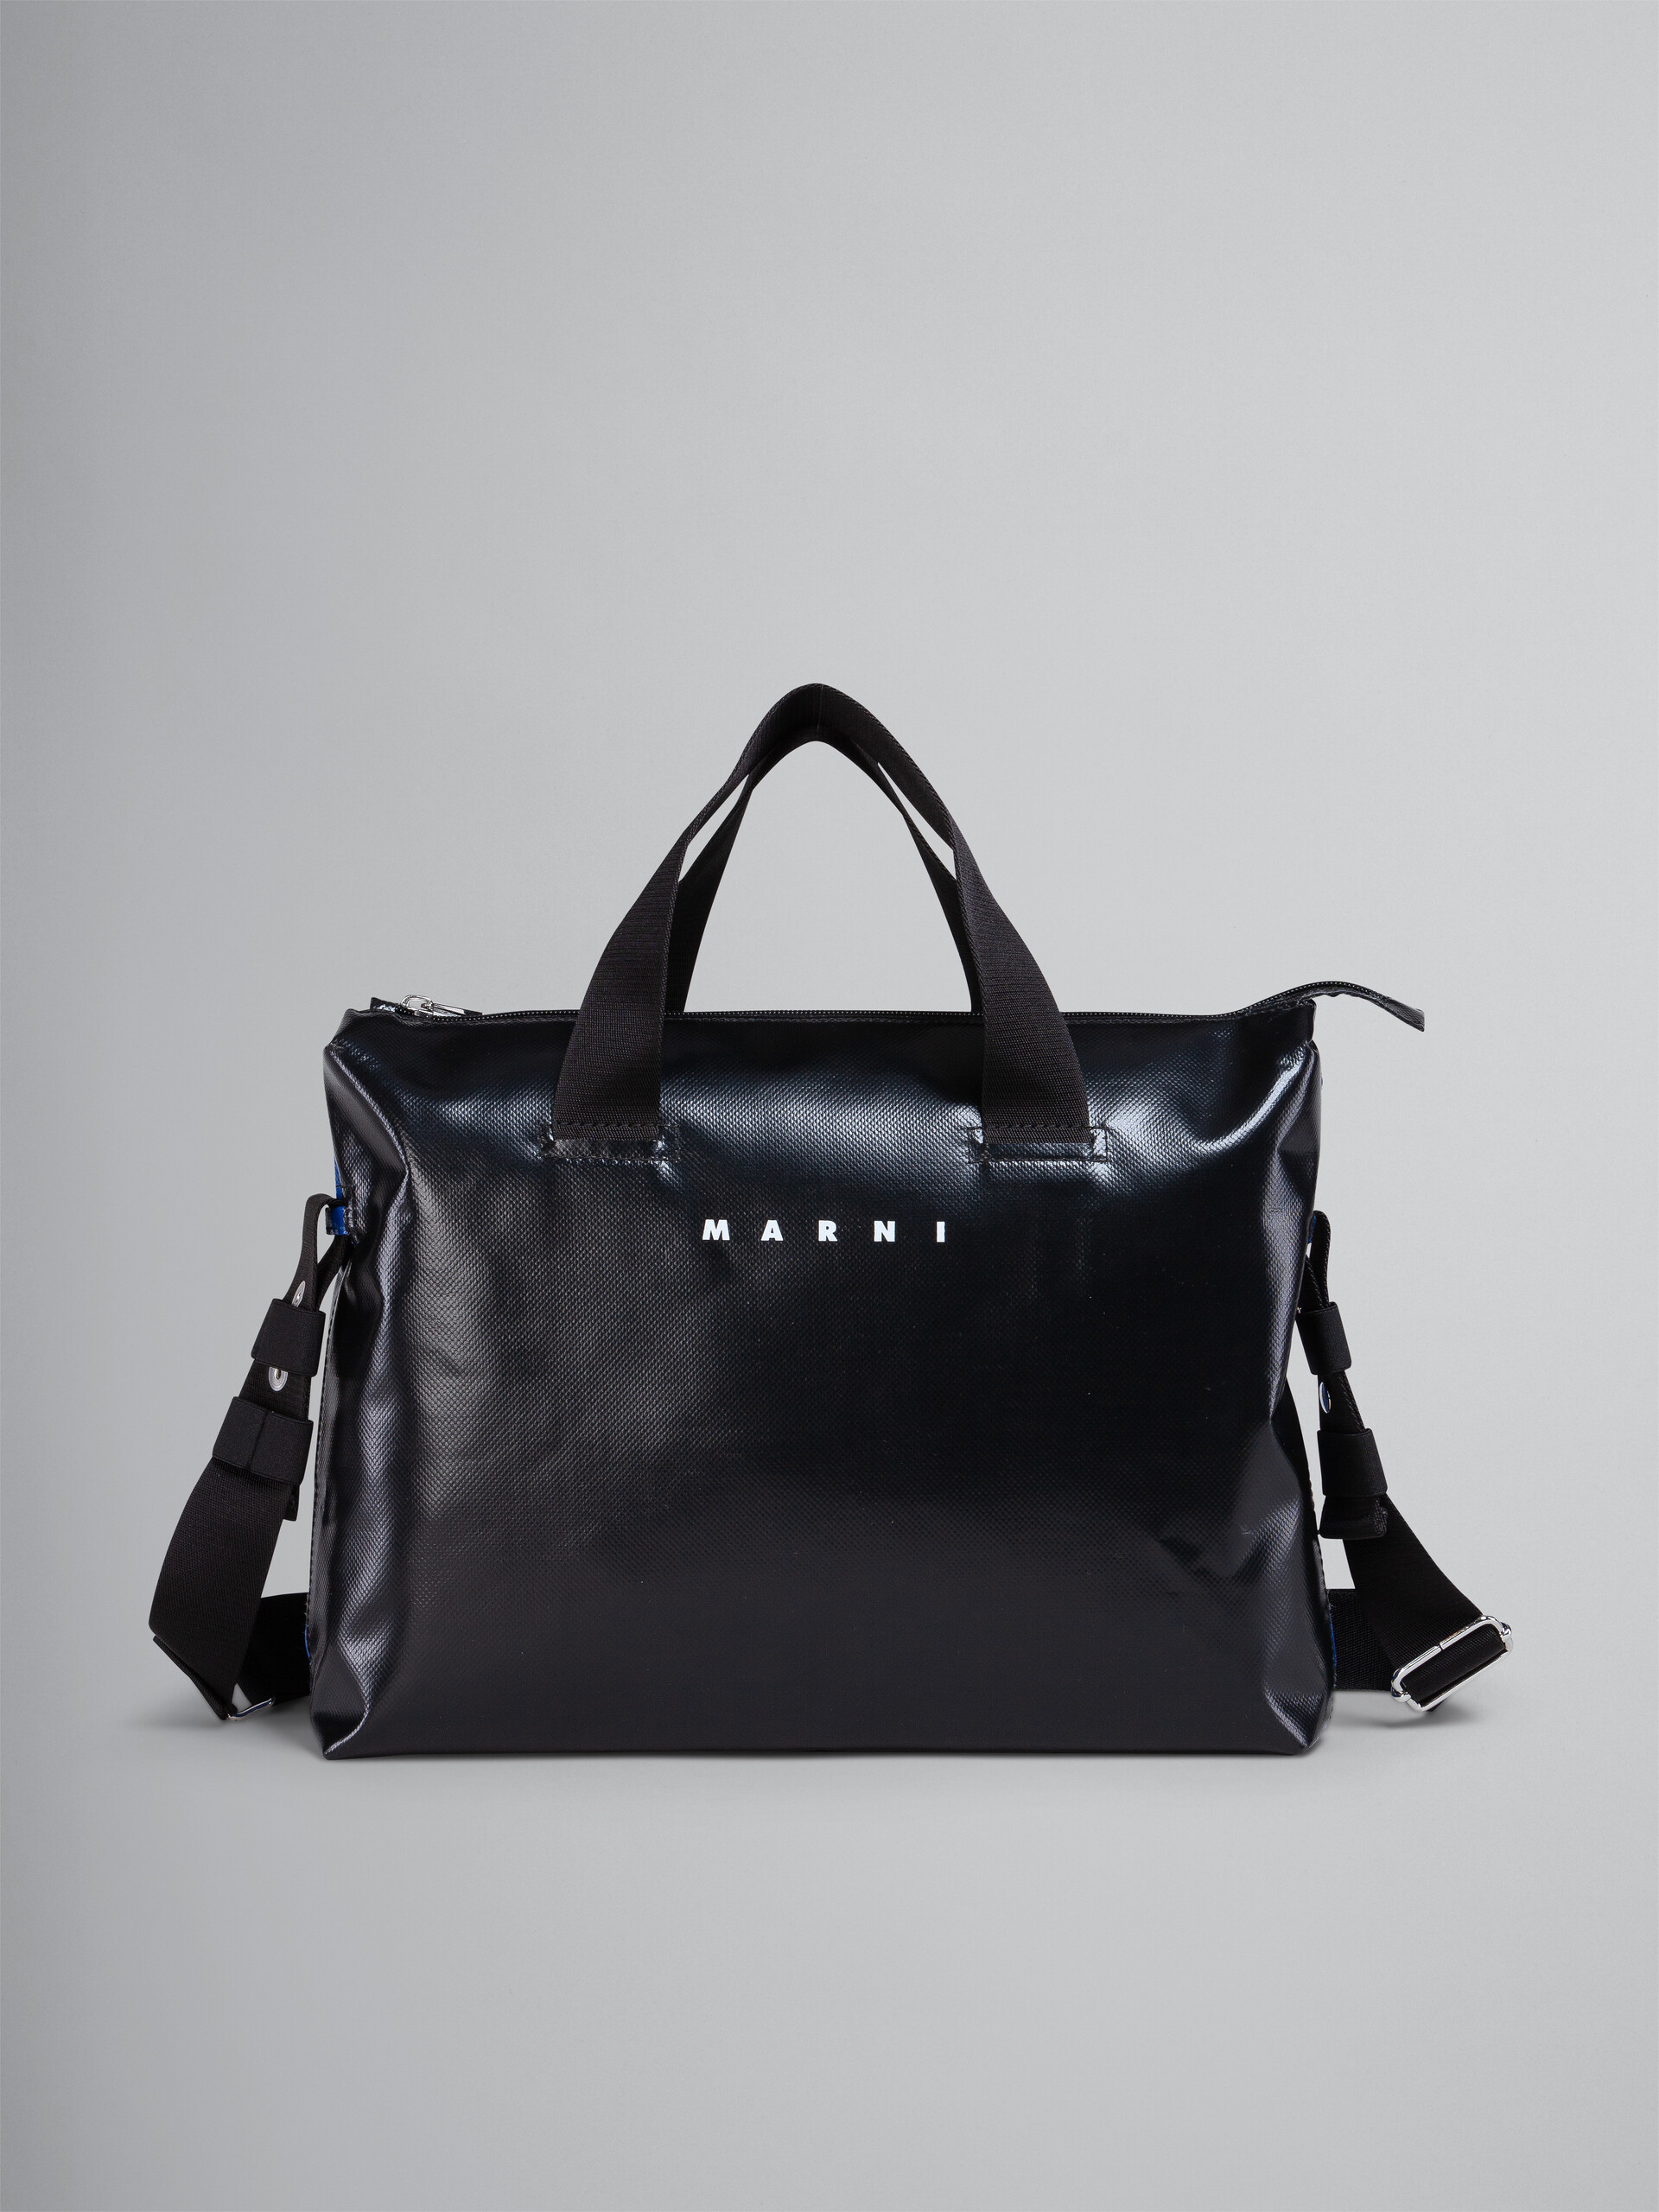 Black and blue TRIBECA bag - Handbag - Image 1